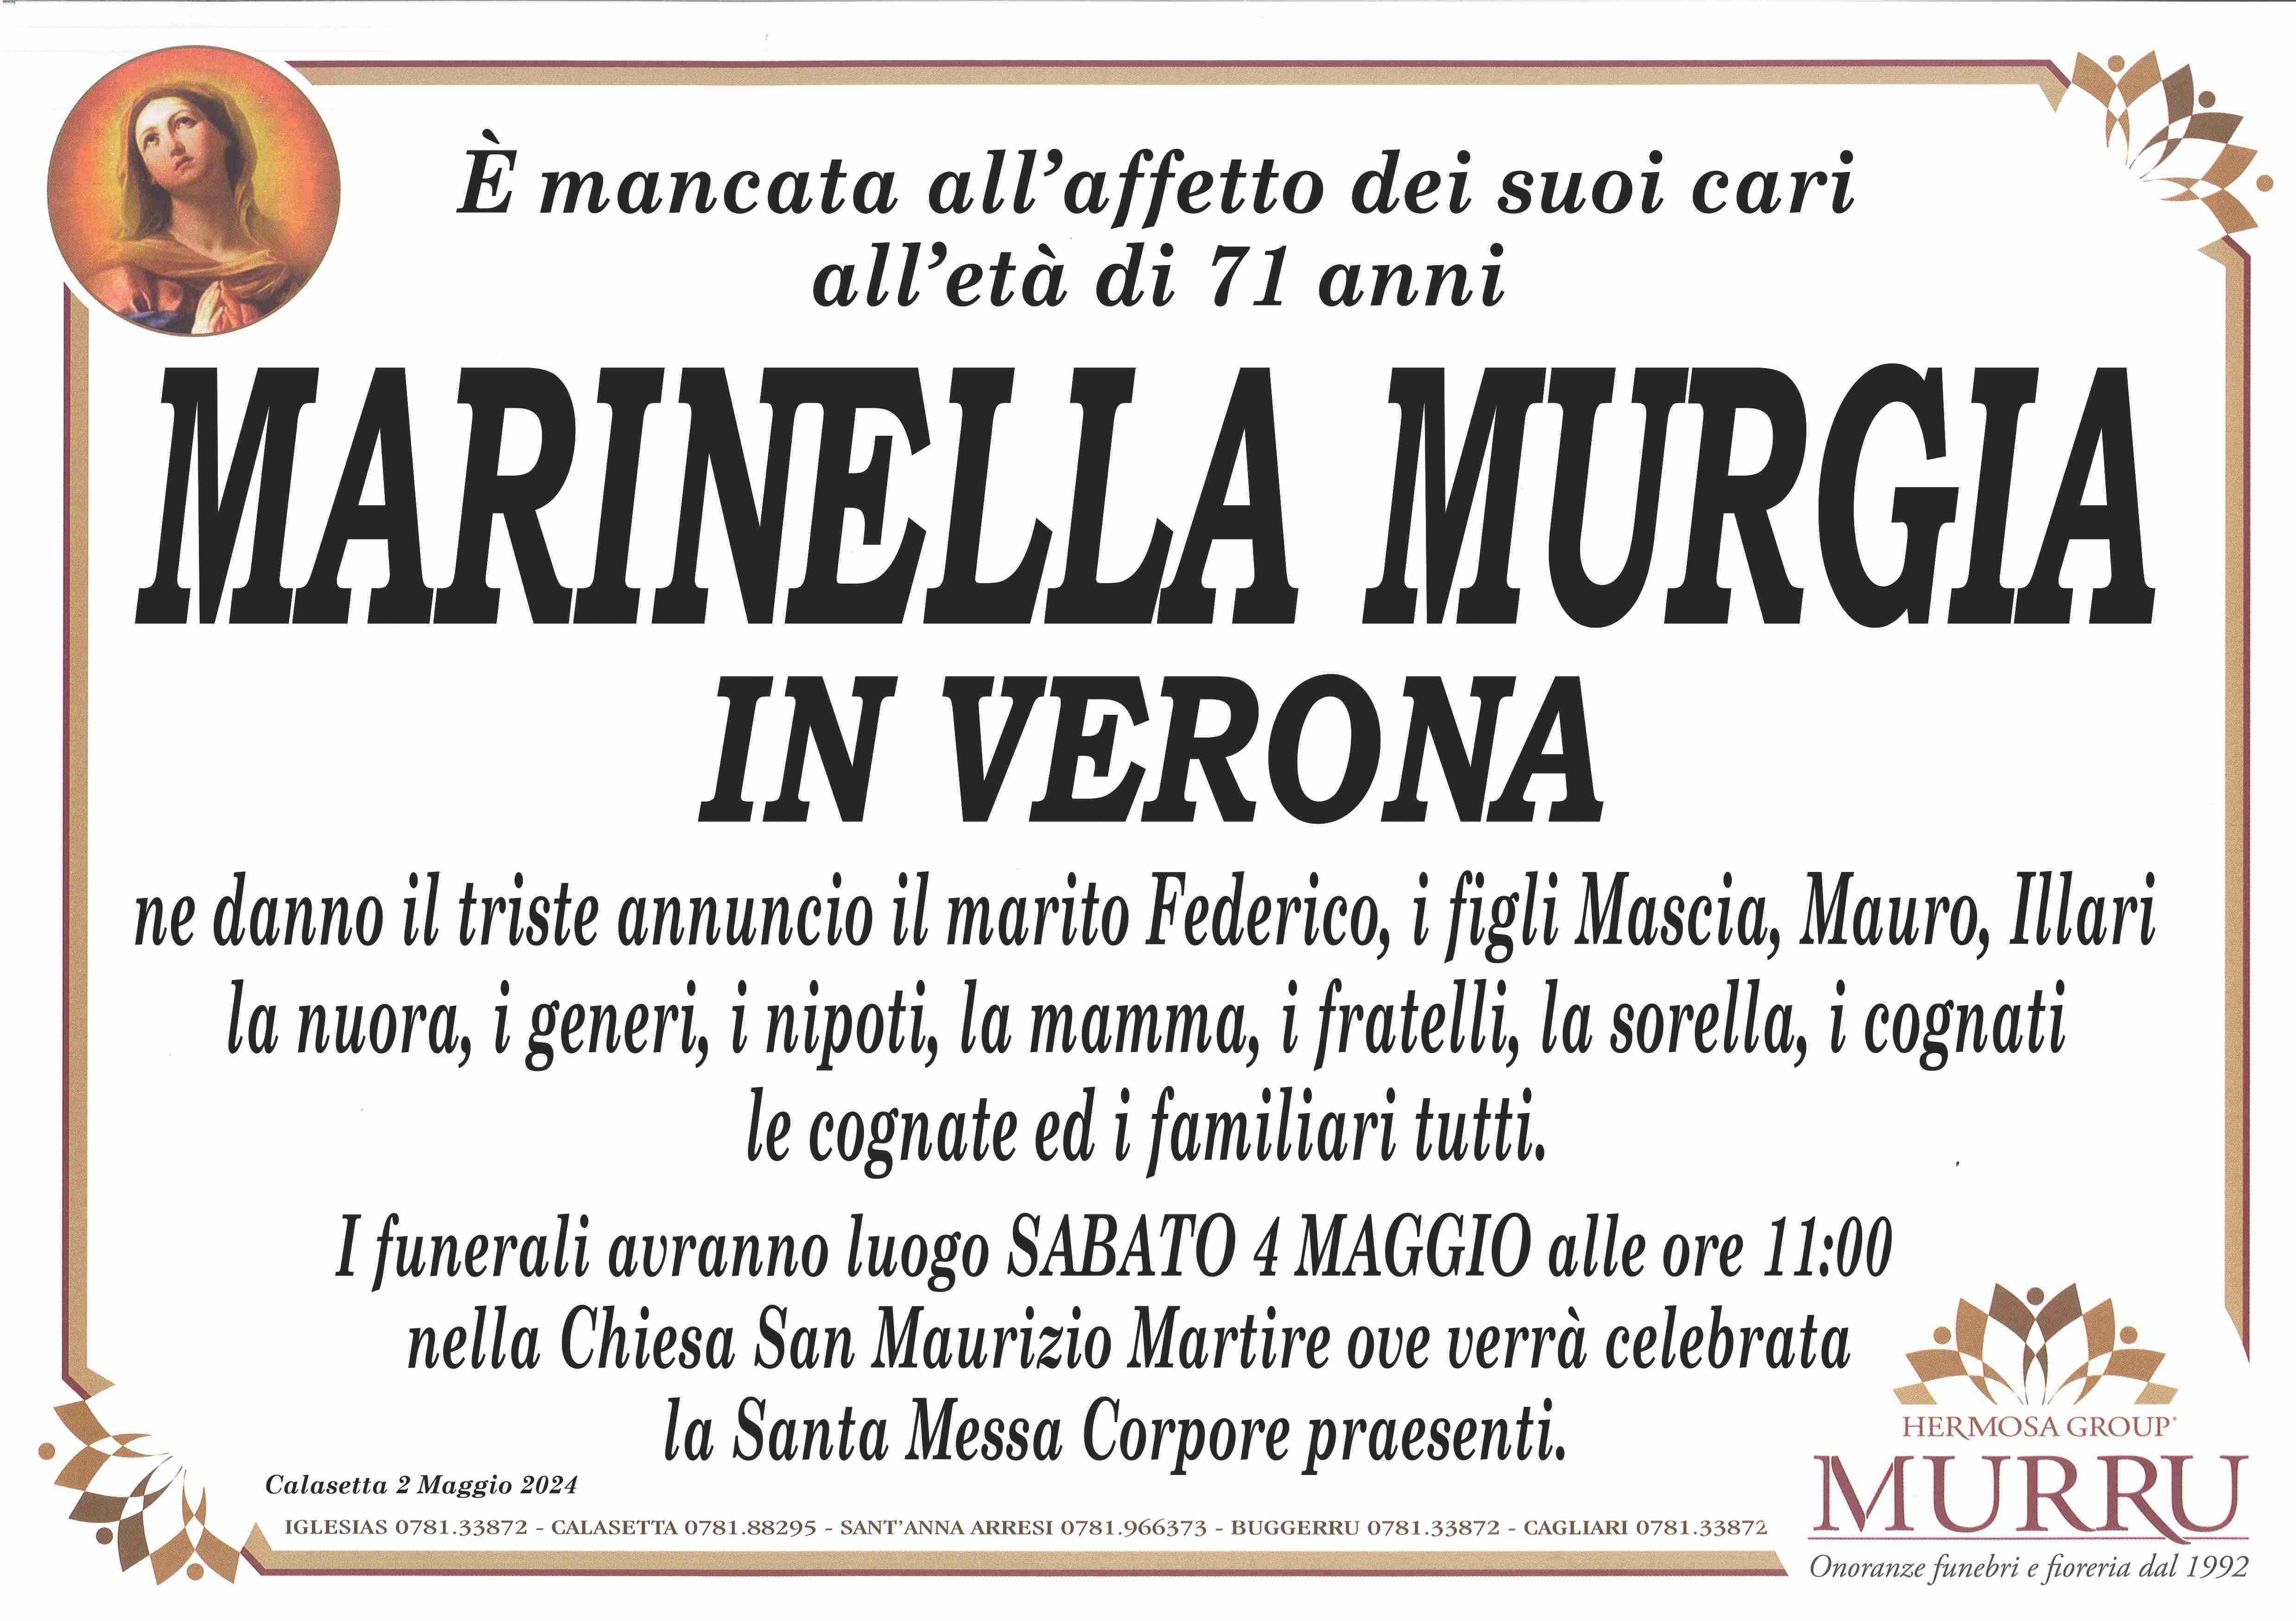 Marinella Murgia